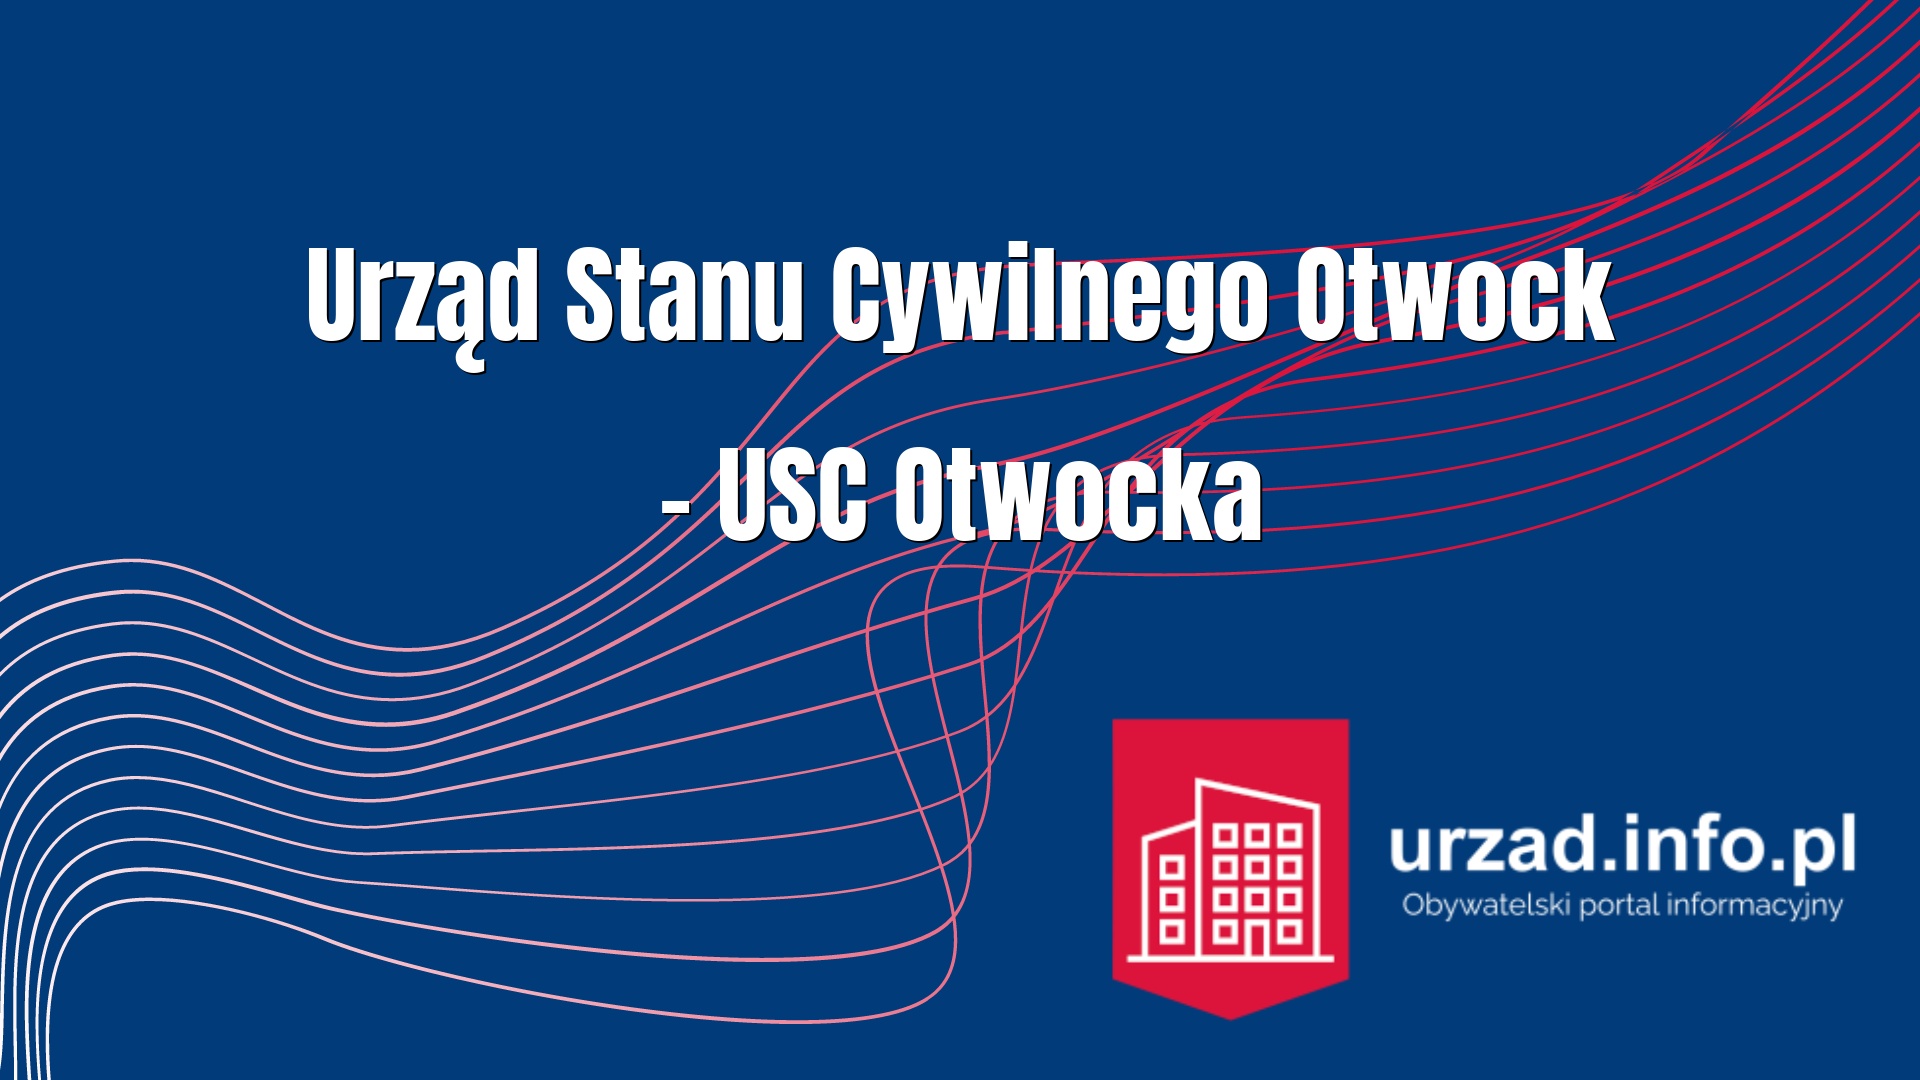 Urząd Stanu Cywilnego Otwock – USC Otwocka